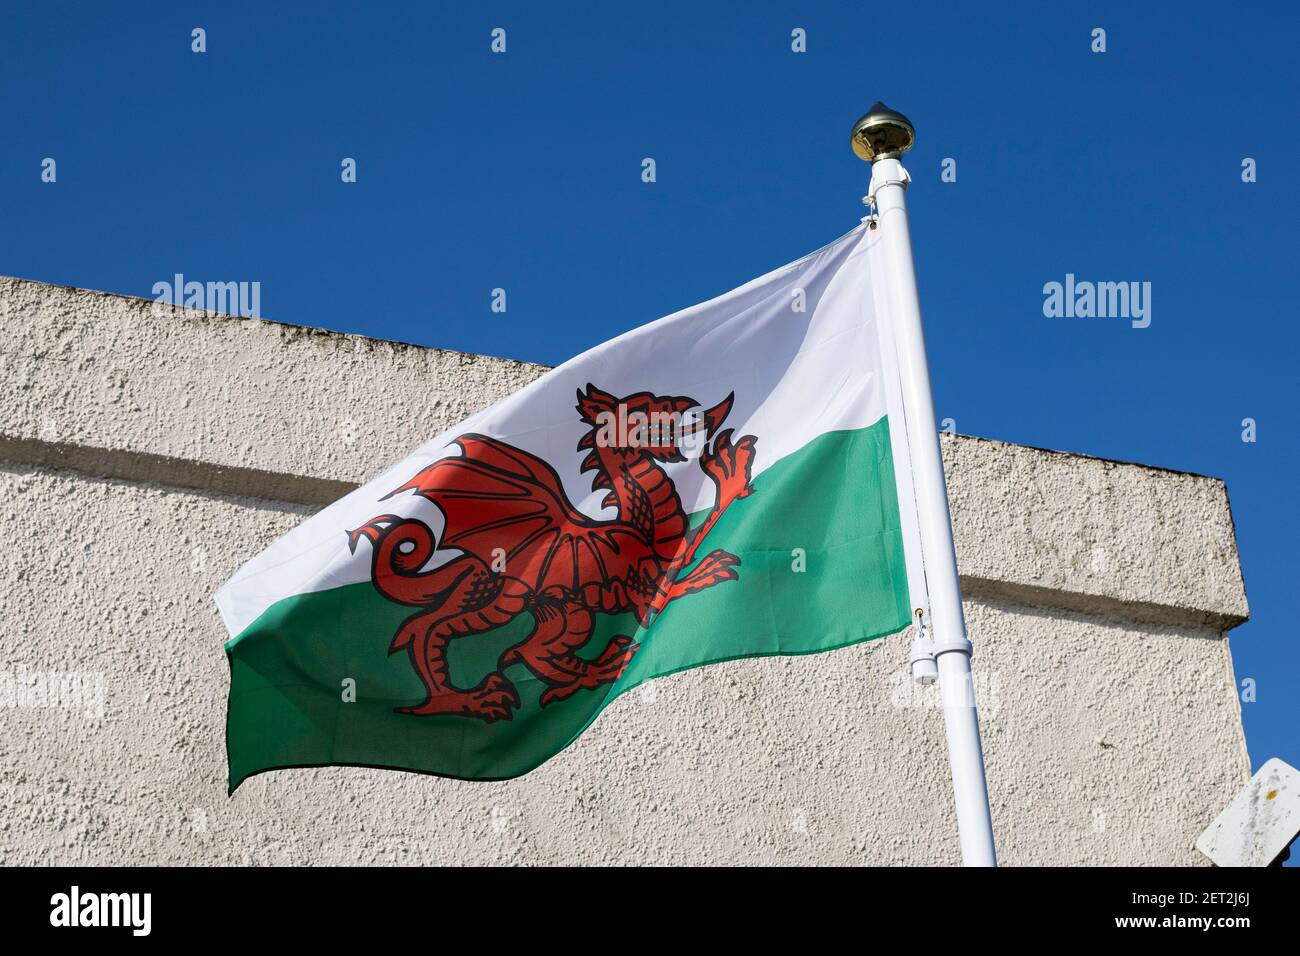 Eine walisische Flagge, die am 1st. März 2021 über dem Aberkenfig Square in Bridgend fliegt. Kredit: Lewis Mitchell Stockfoto